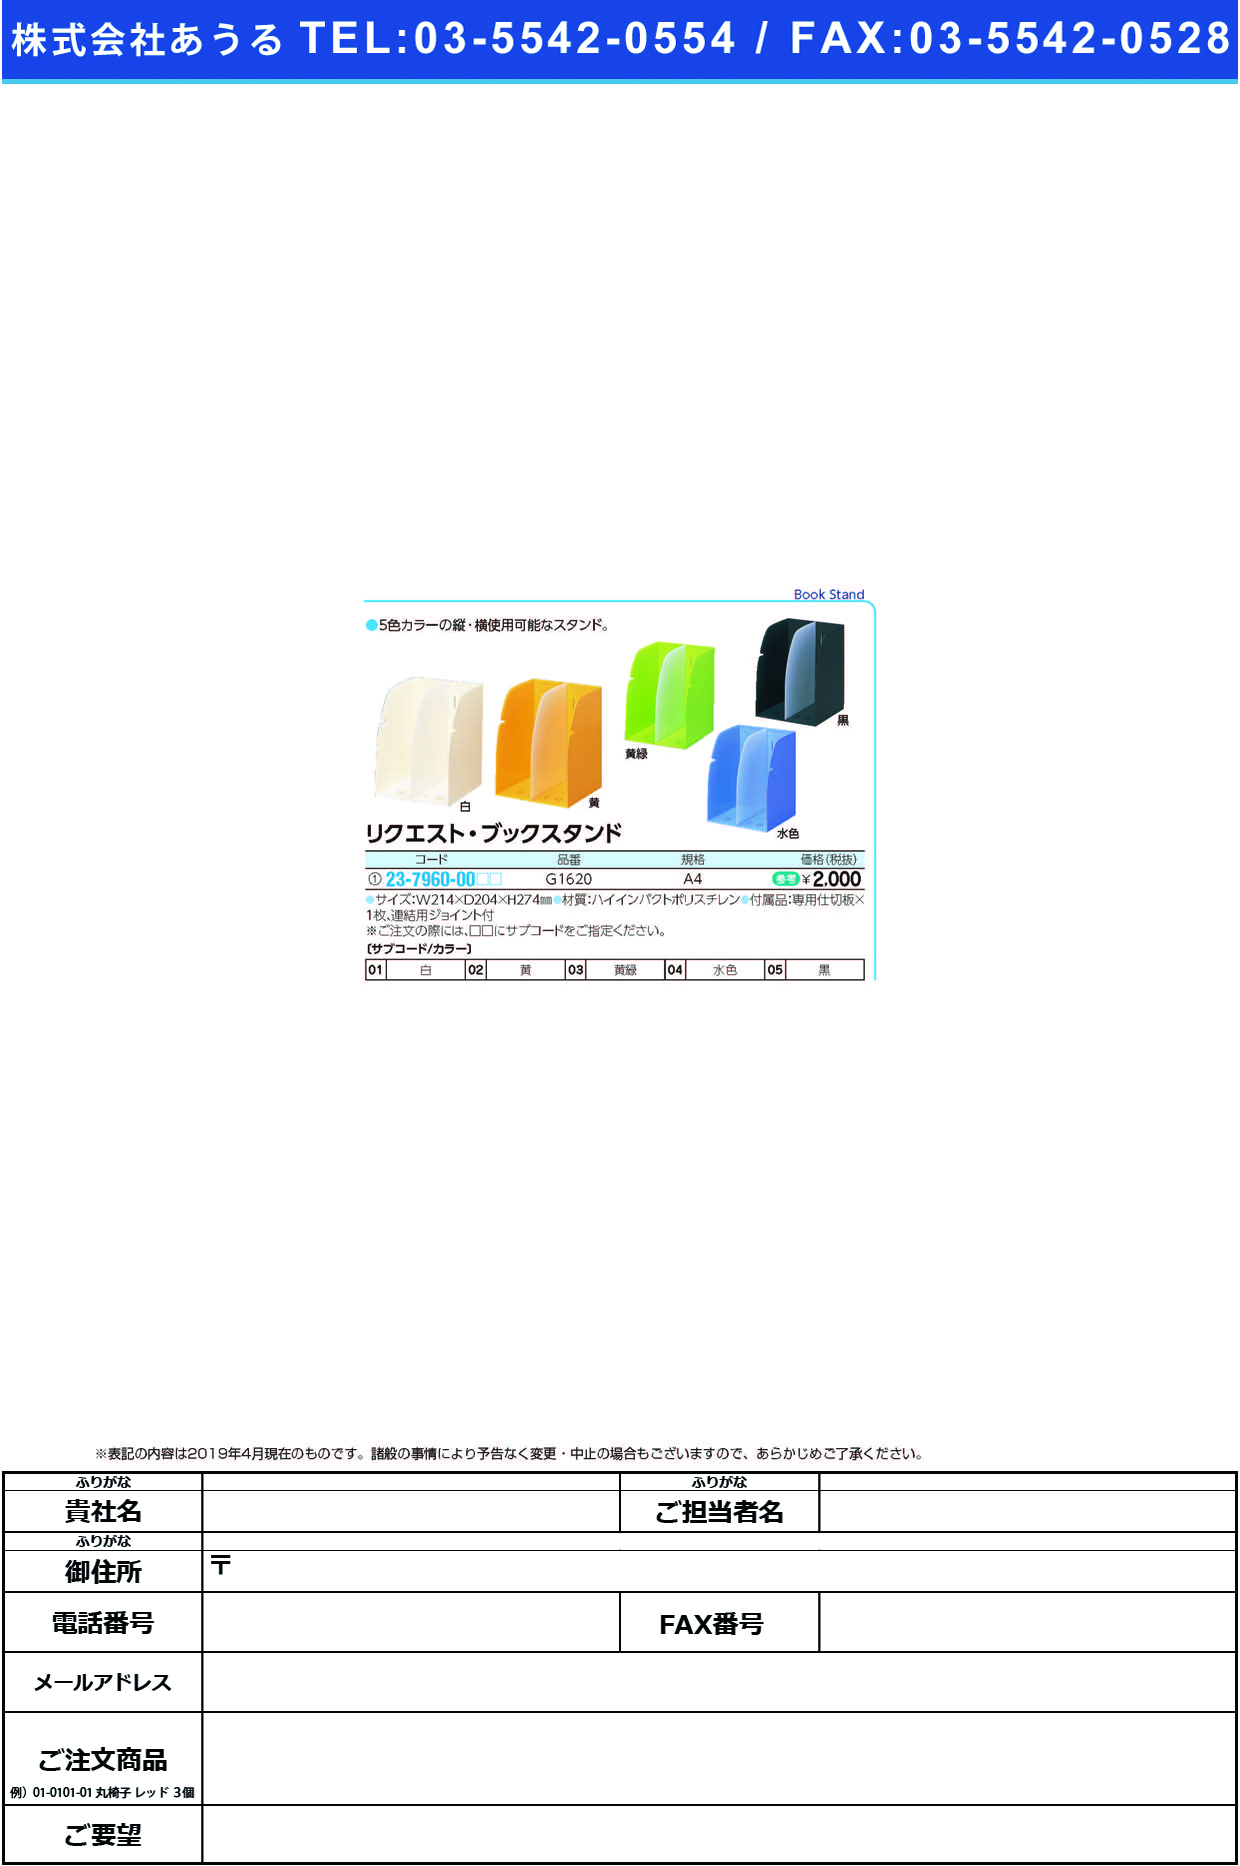 (23-7960-00)リクエストブックスタンド G1620(A4) ﾘｸｴｽﾄﾌﾞｯｸｽﾀﾝﾄﾞ 白(ＬＩＨＩＴＬＡＢ．)【1個単位】【2019年カタログ商品】